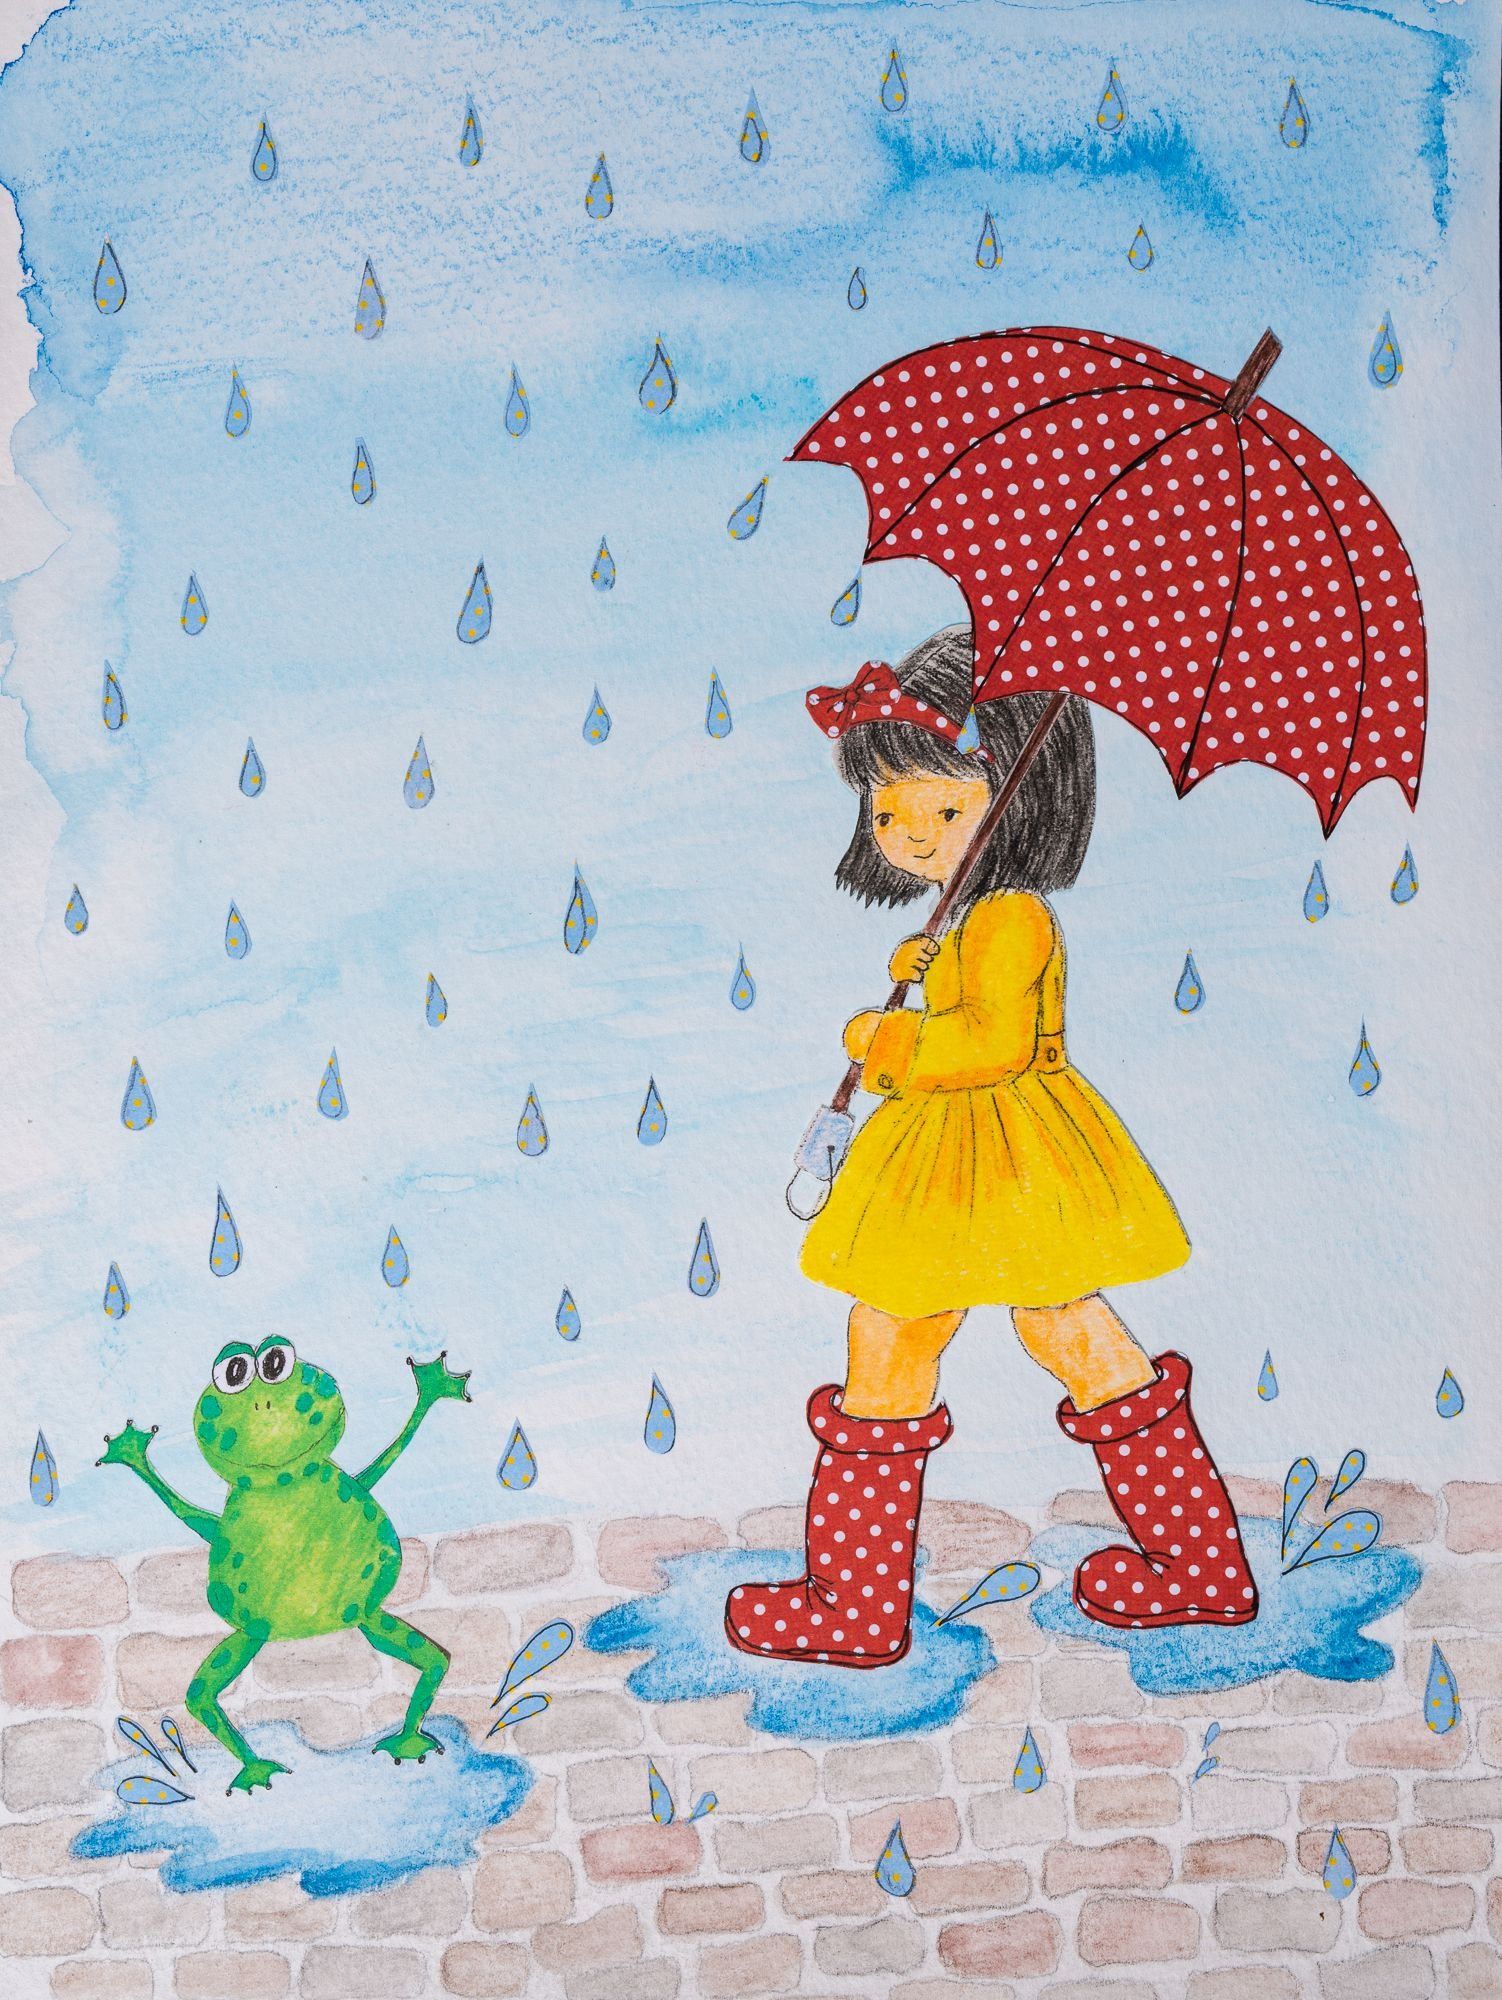 Дождик картинки для детей. Дождь рисунок. Дождь картинка для детей. Дождик картинка для детей. Дождь рисунок для детей.